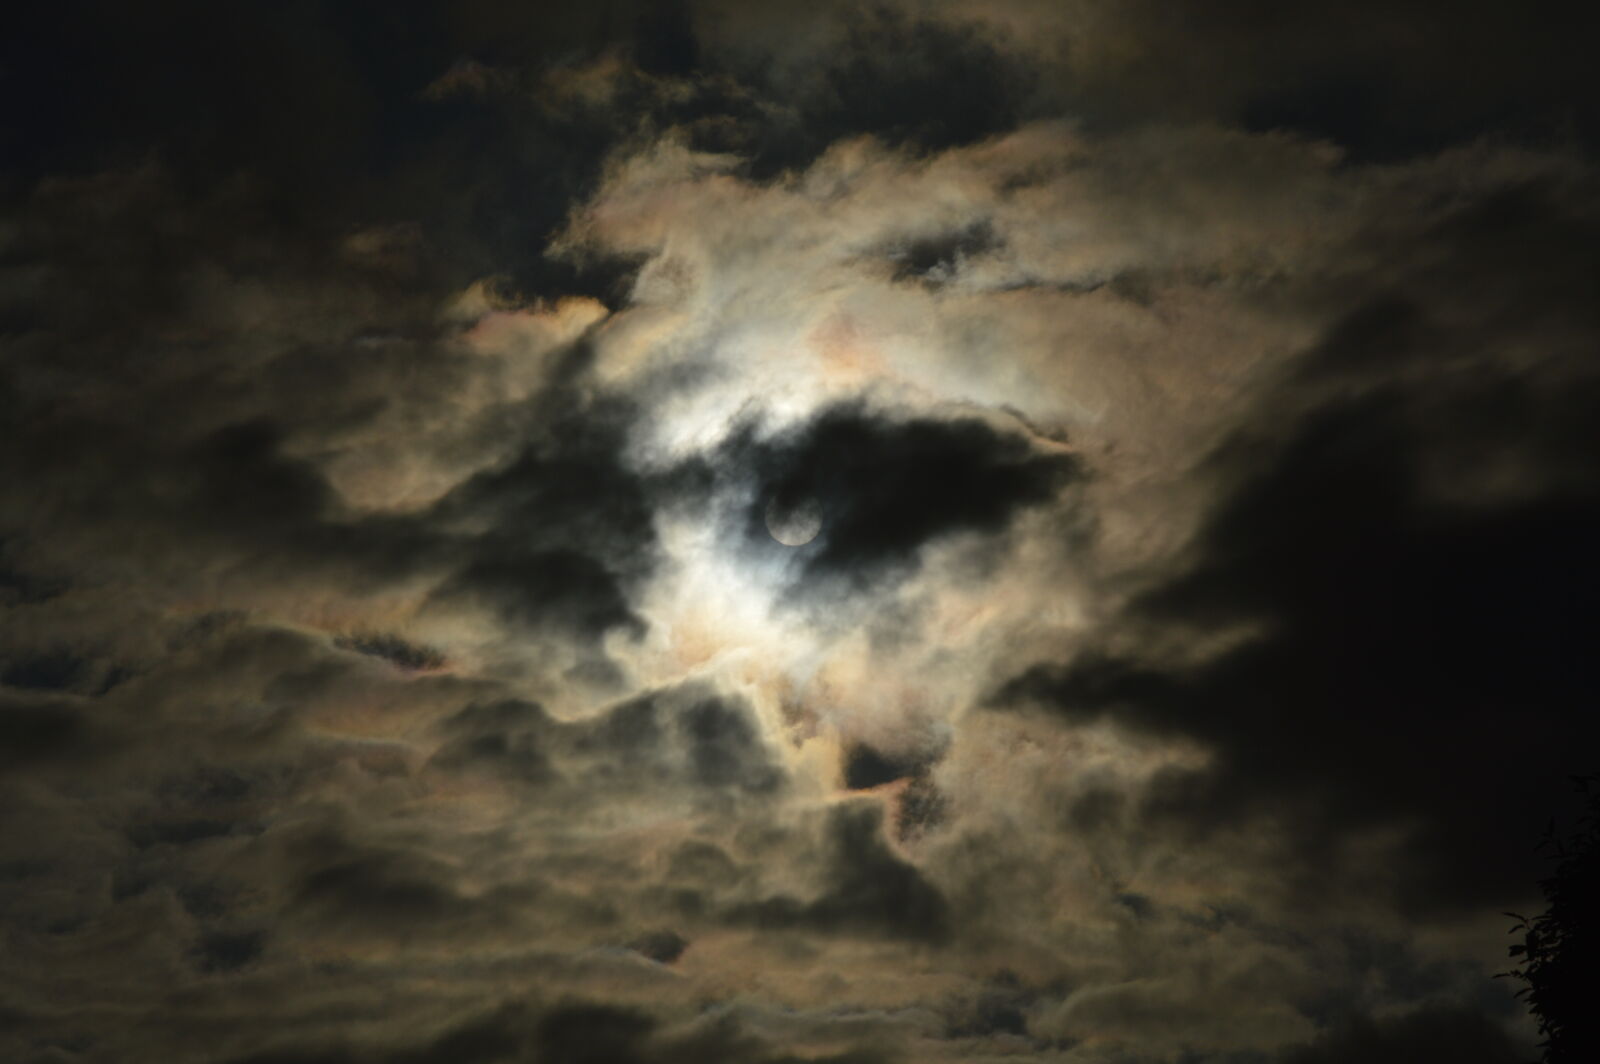 Nikon D3200 + Tamron AF 18-200mm F3.5-6.3 XR Di II LD Aspherical (IF) Macro sample photo. Cloud, darkness, evening, sun photography